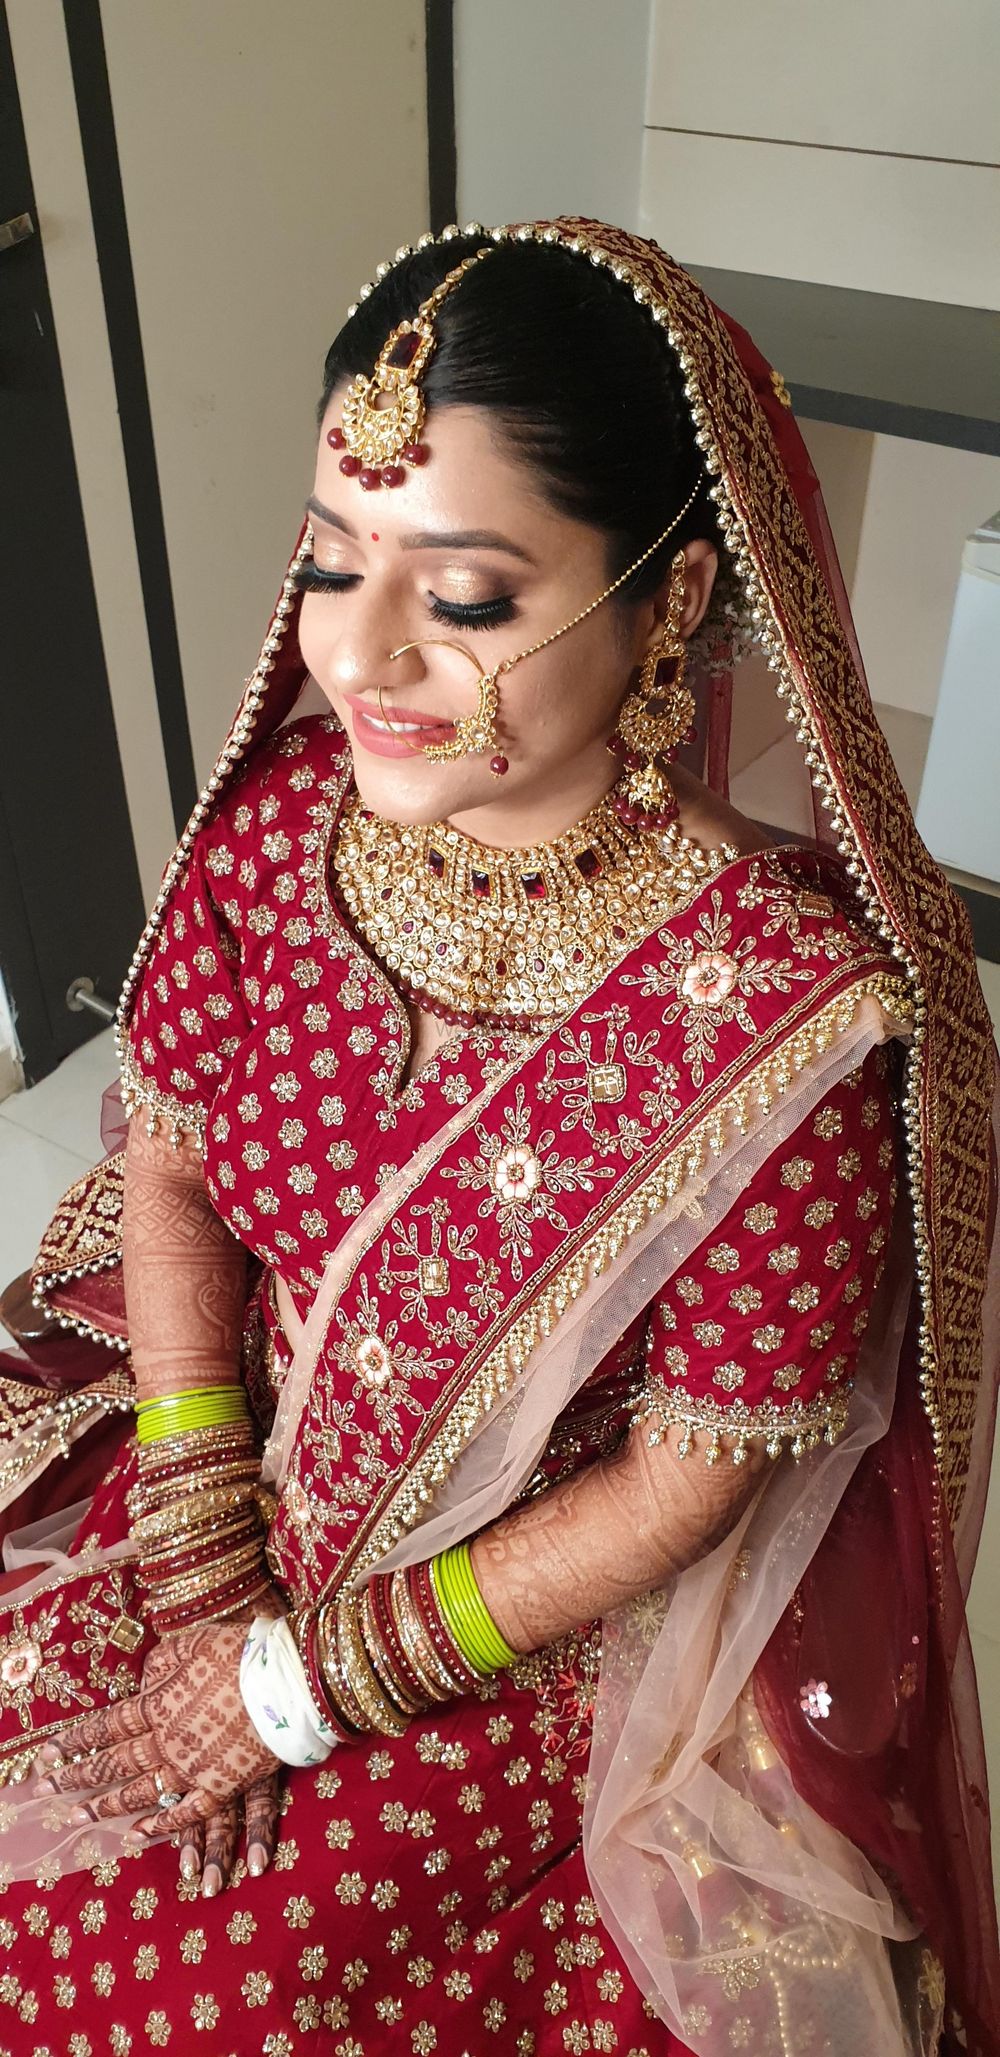 Photo From Vranda bridal - By Shivoli Dogra